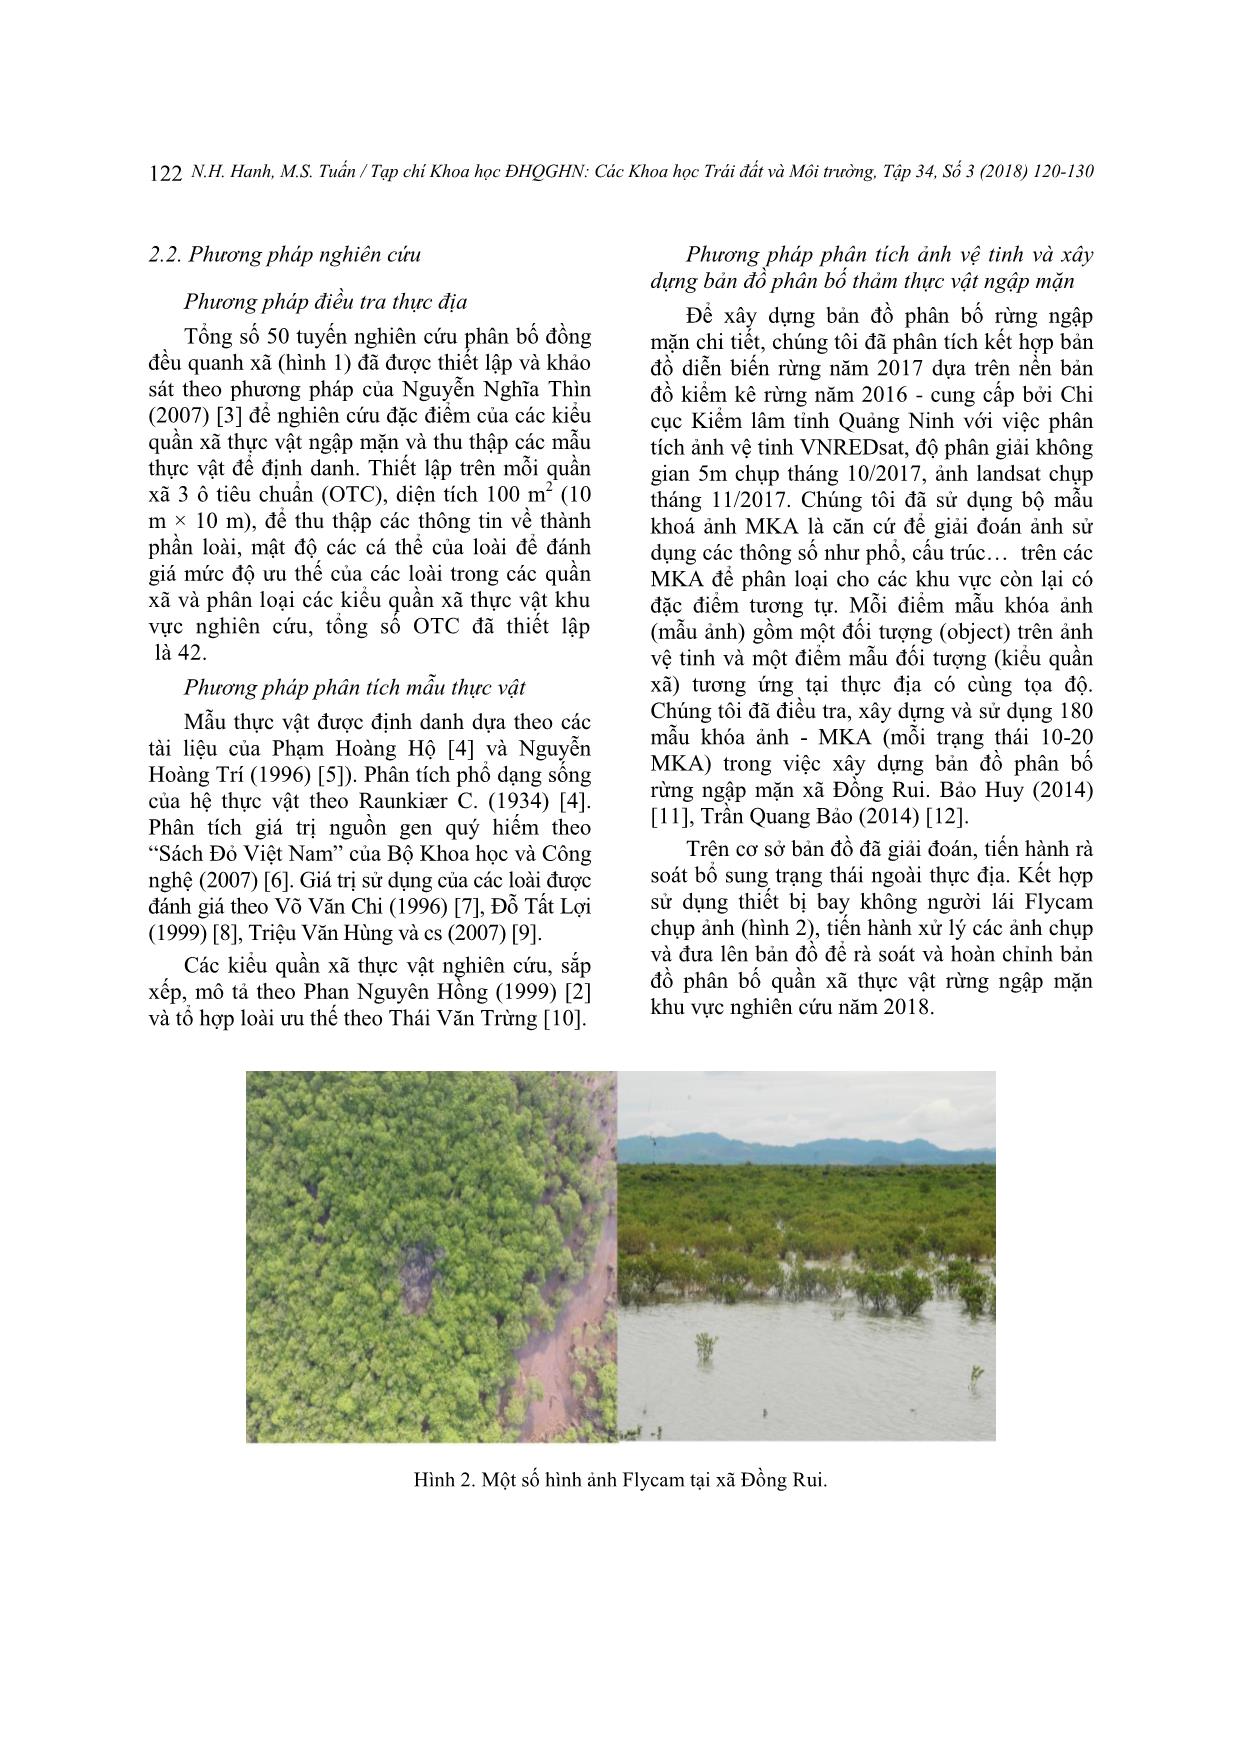 Hiện trạng thảm thực vật ngập mặn xã Đồng Rui, huyện Tiên Yên, tỉnh Quảng Ninh trang 3